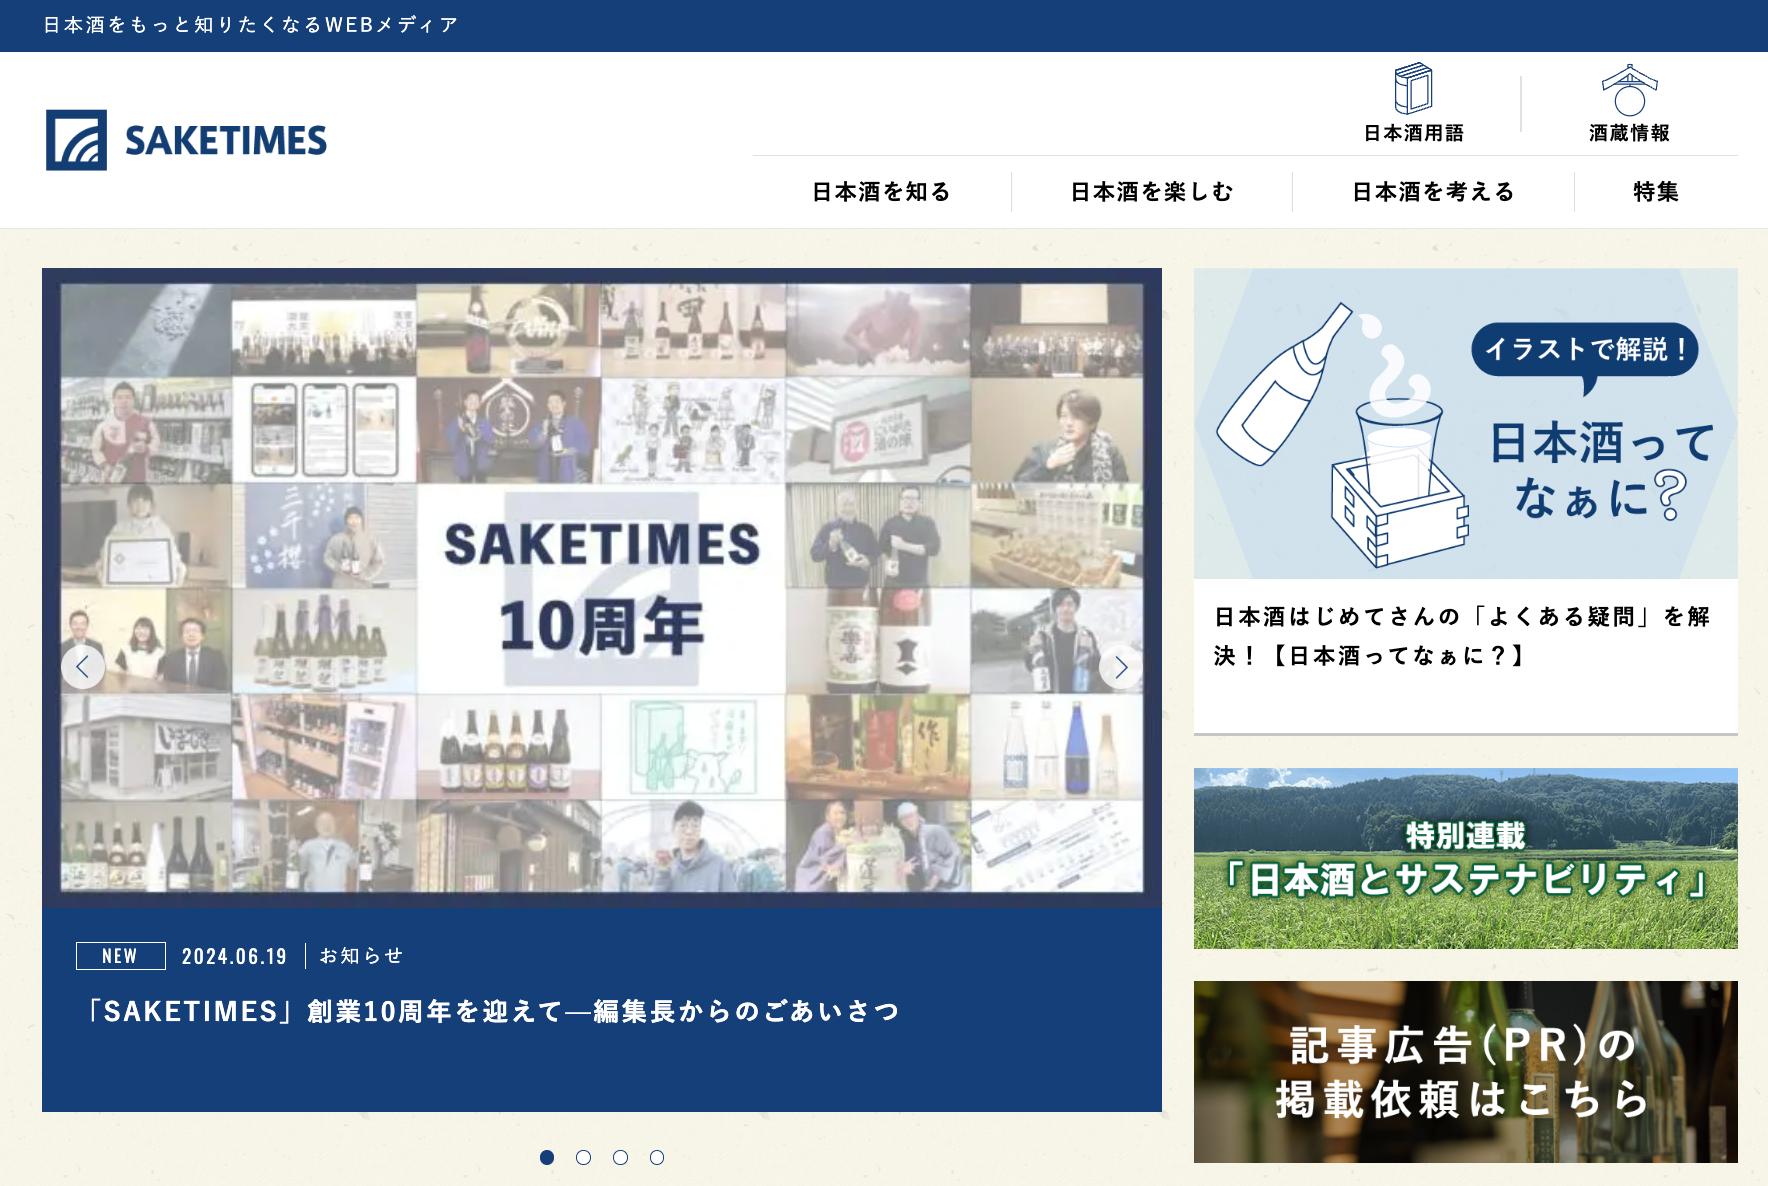 国内最大級の日本酒専門WEBメディア「SAKETIMES」創業10周年を記念し、オリジナル日本酒を6月21日より発売